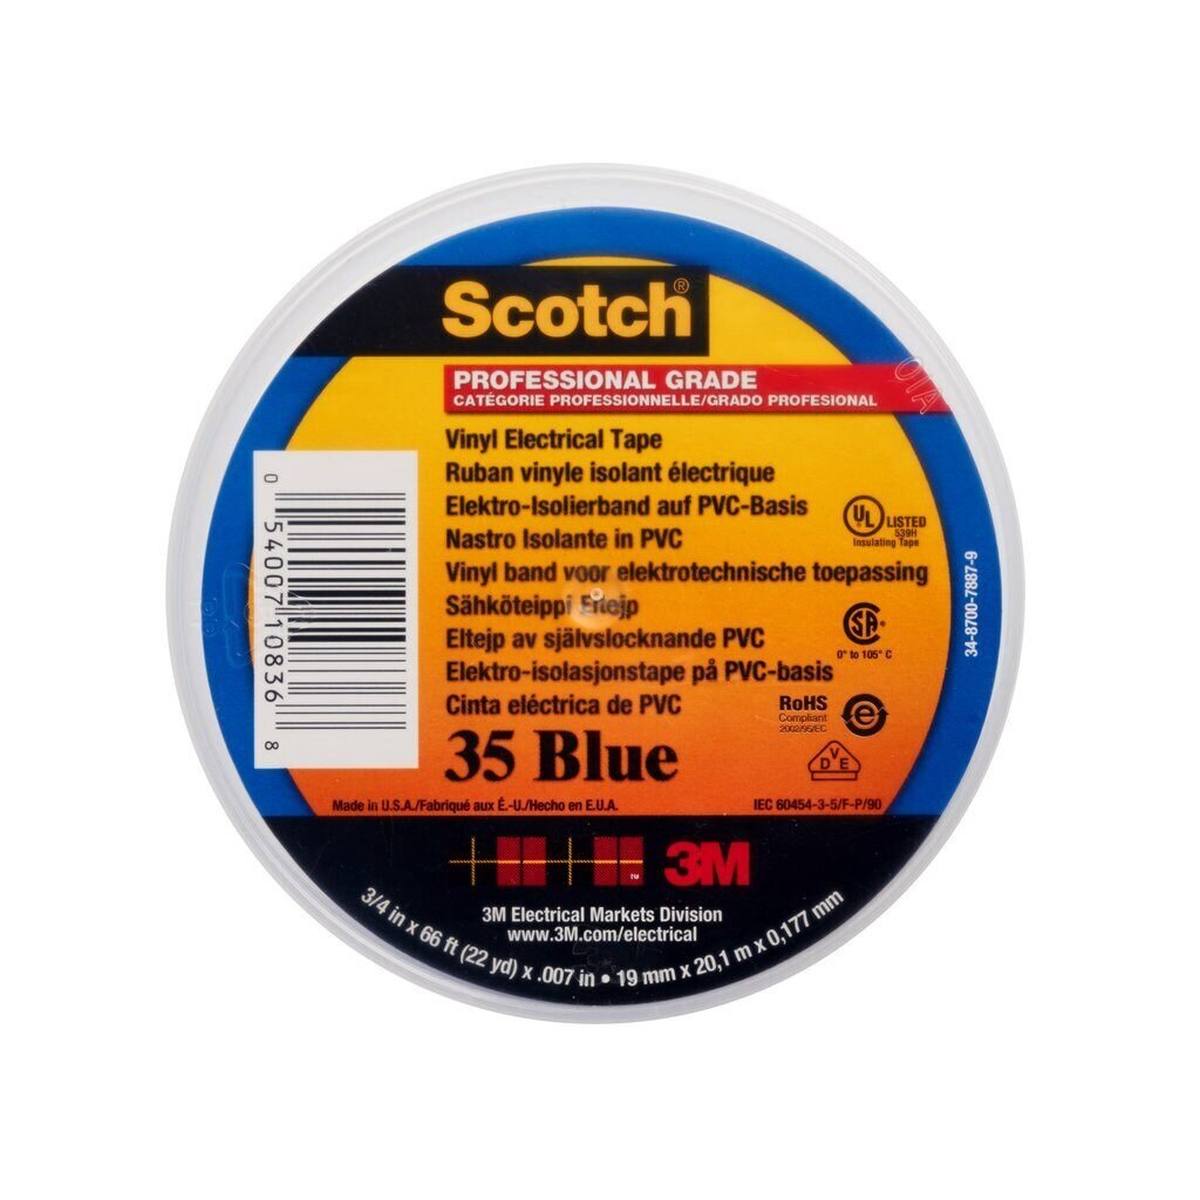 3M Scotch 35 vinyylinen sähköeristysteippi, sininen, 19 mm x 20 m, 0,18 mm